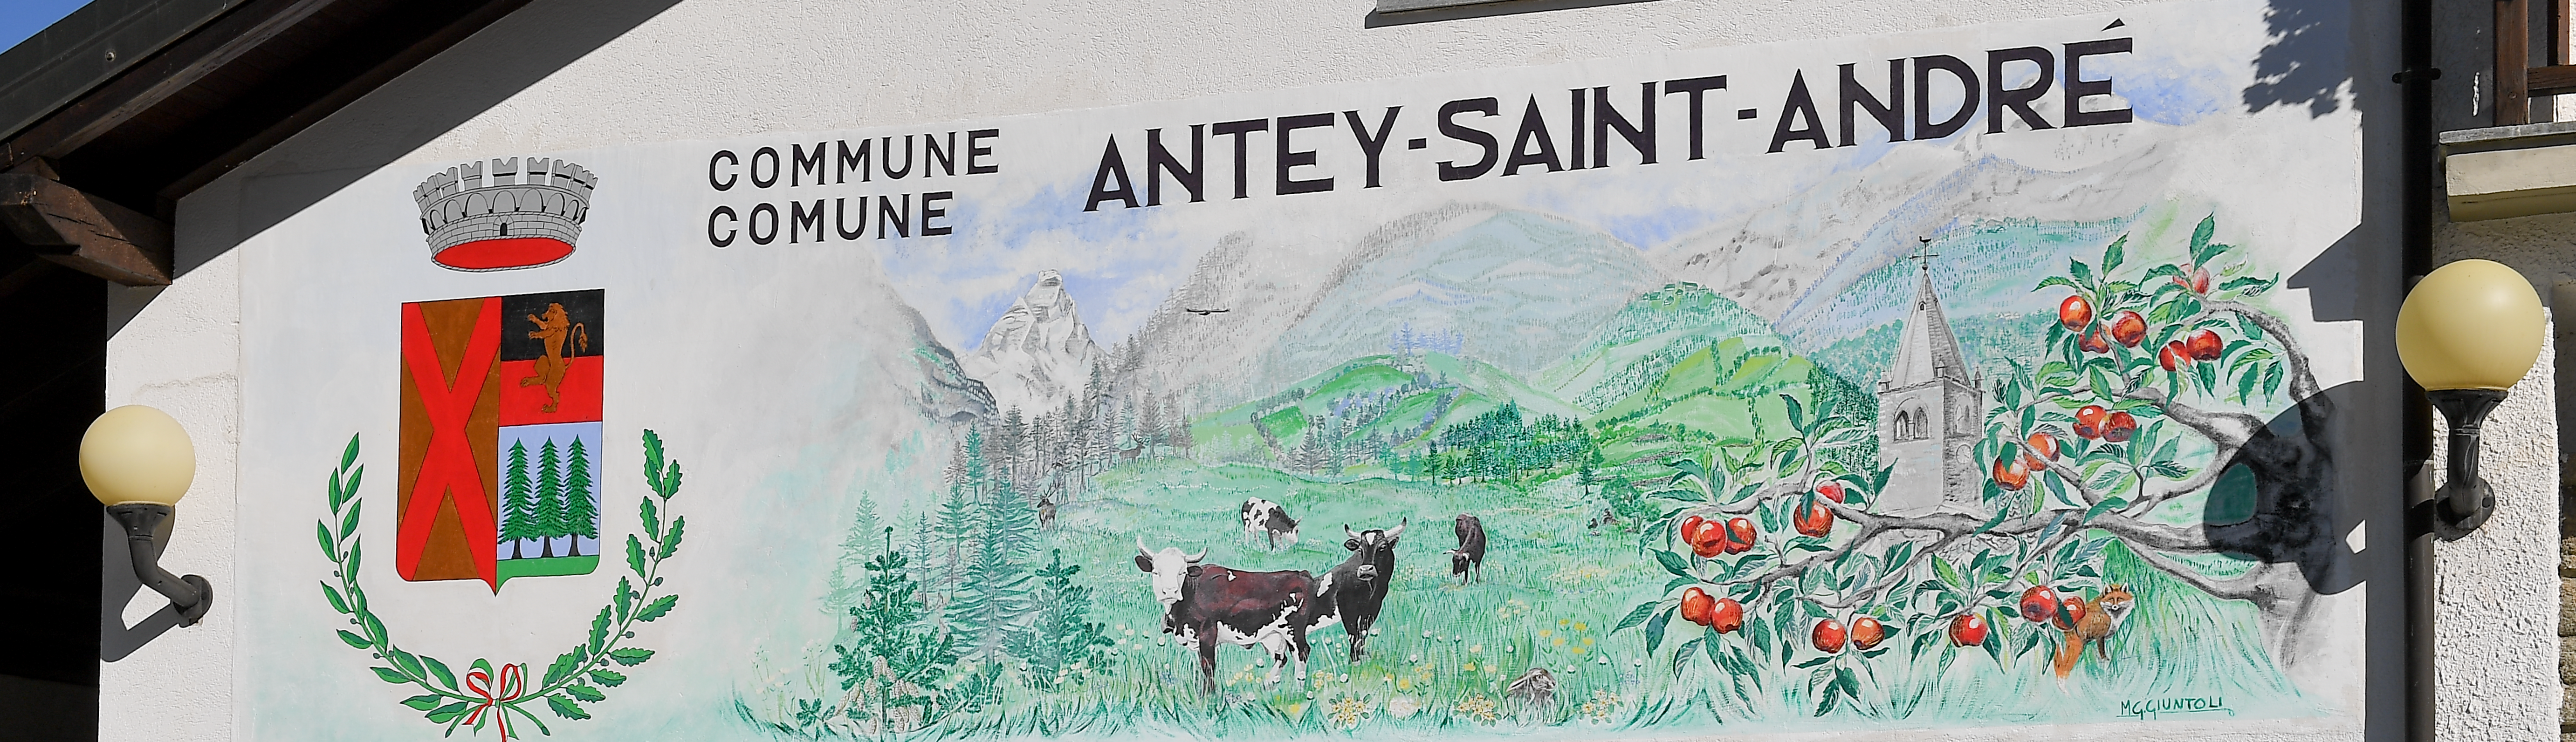 Antey-Saint-André murales